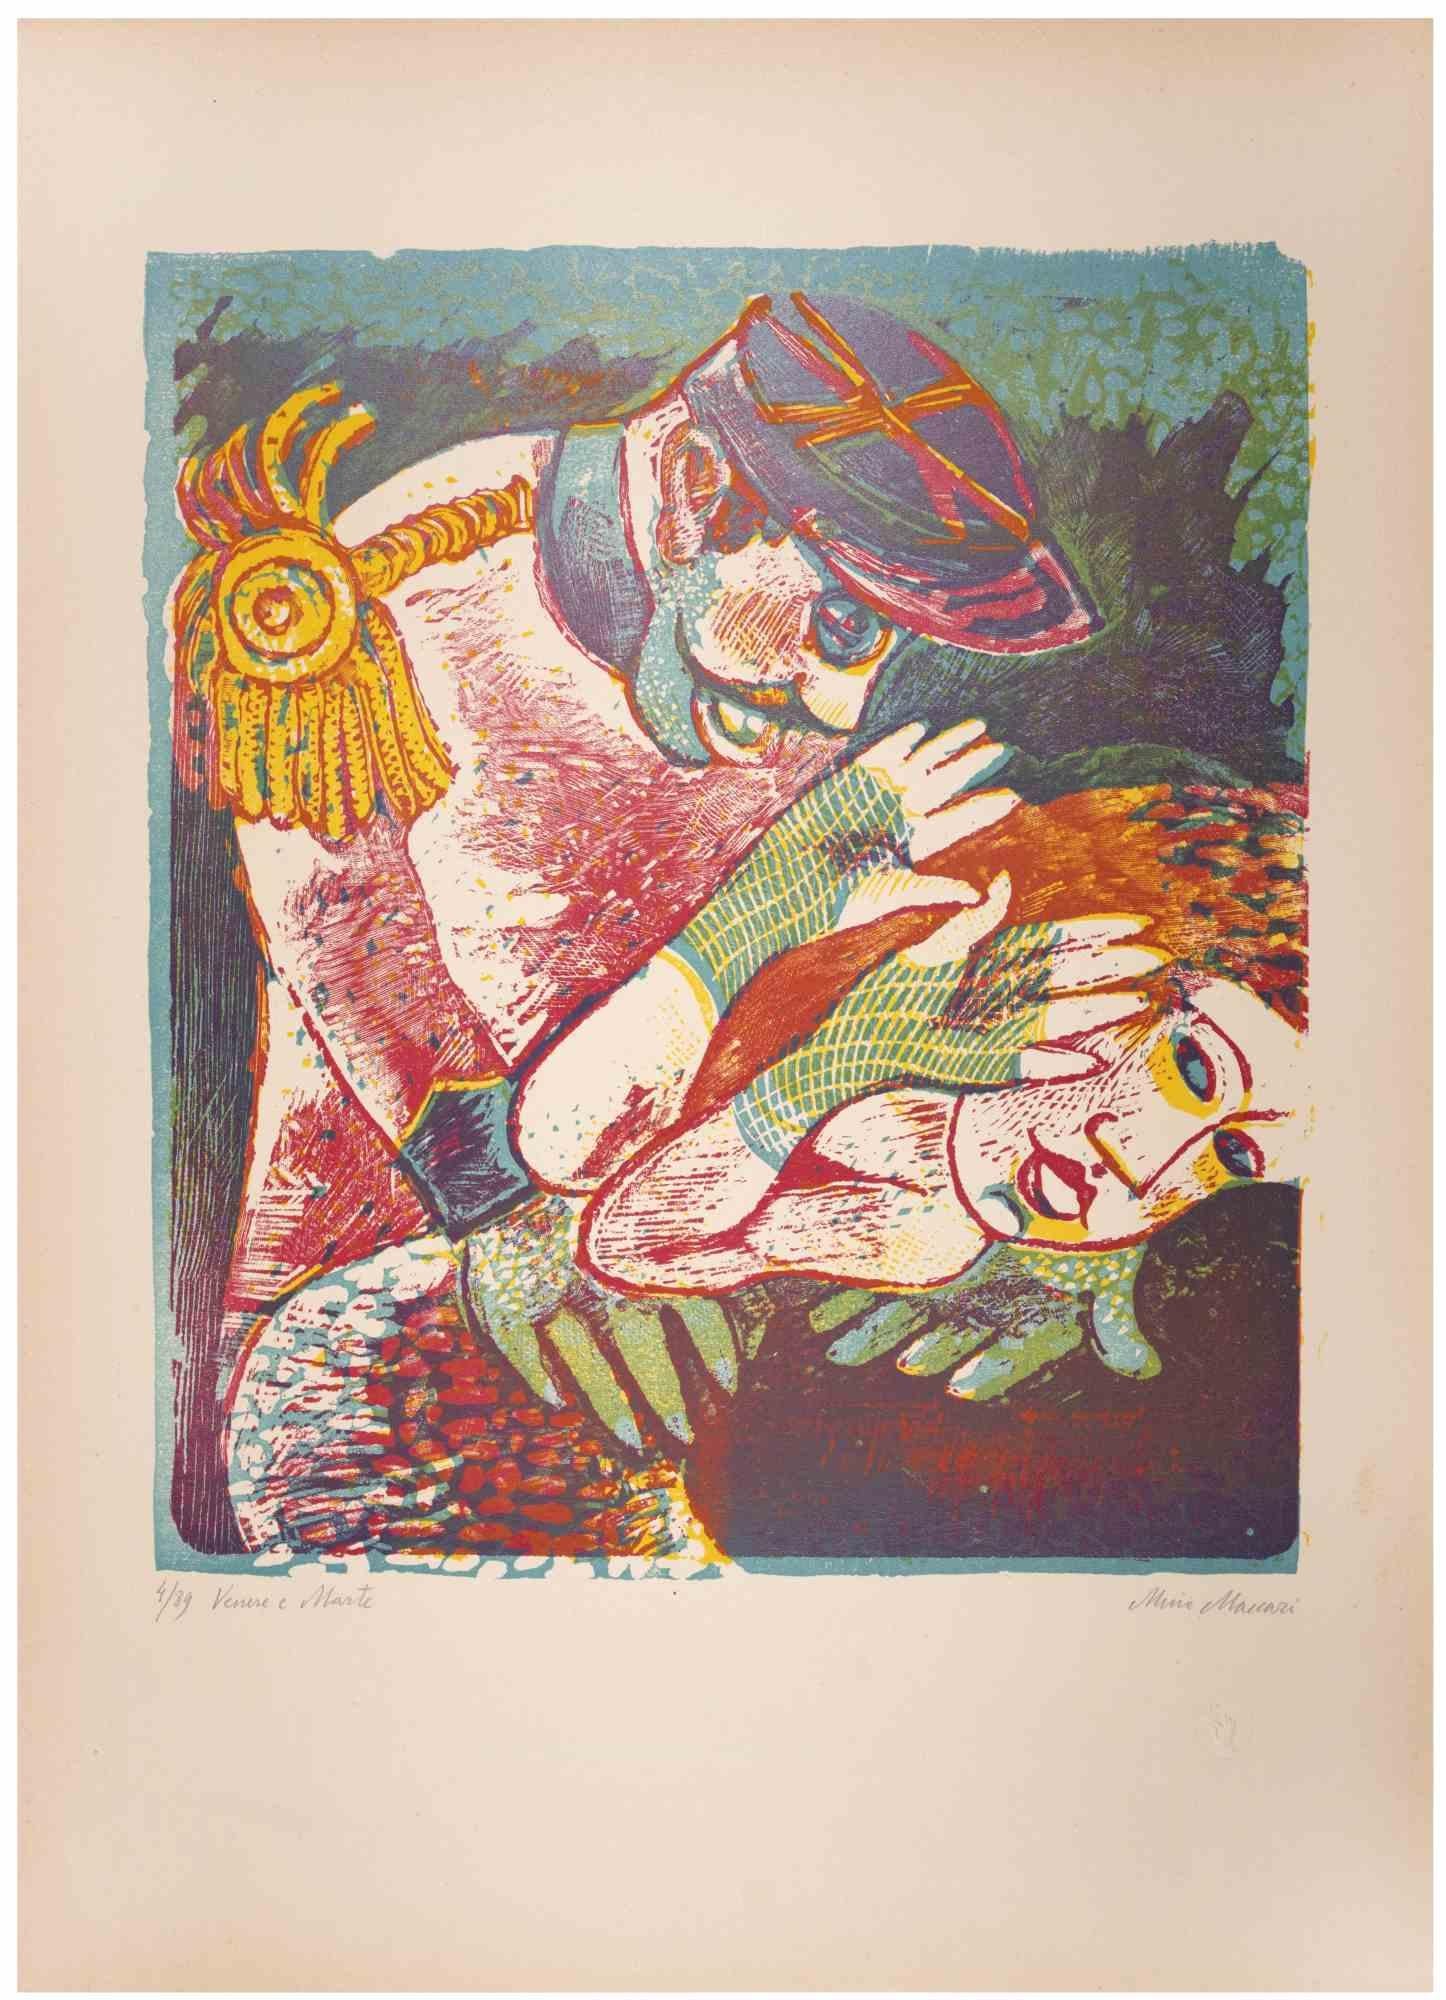 Venus und Mars (Venere e Marte) ist ein Kunstwerk von Mino Maccari (1924-1989) aus dem Jahr 1943.

Farbiger Holzschnitt auf Papier. Unten handsigniert, nummeriert 4/89 Exemplare und am linken Rand betitelt.

Gute Bedingungen.

Mino Maccari (Siena,